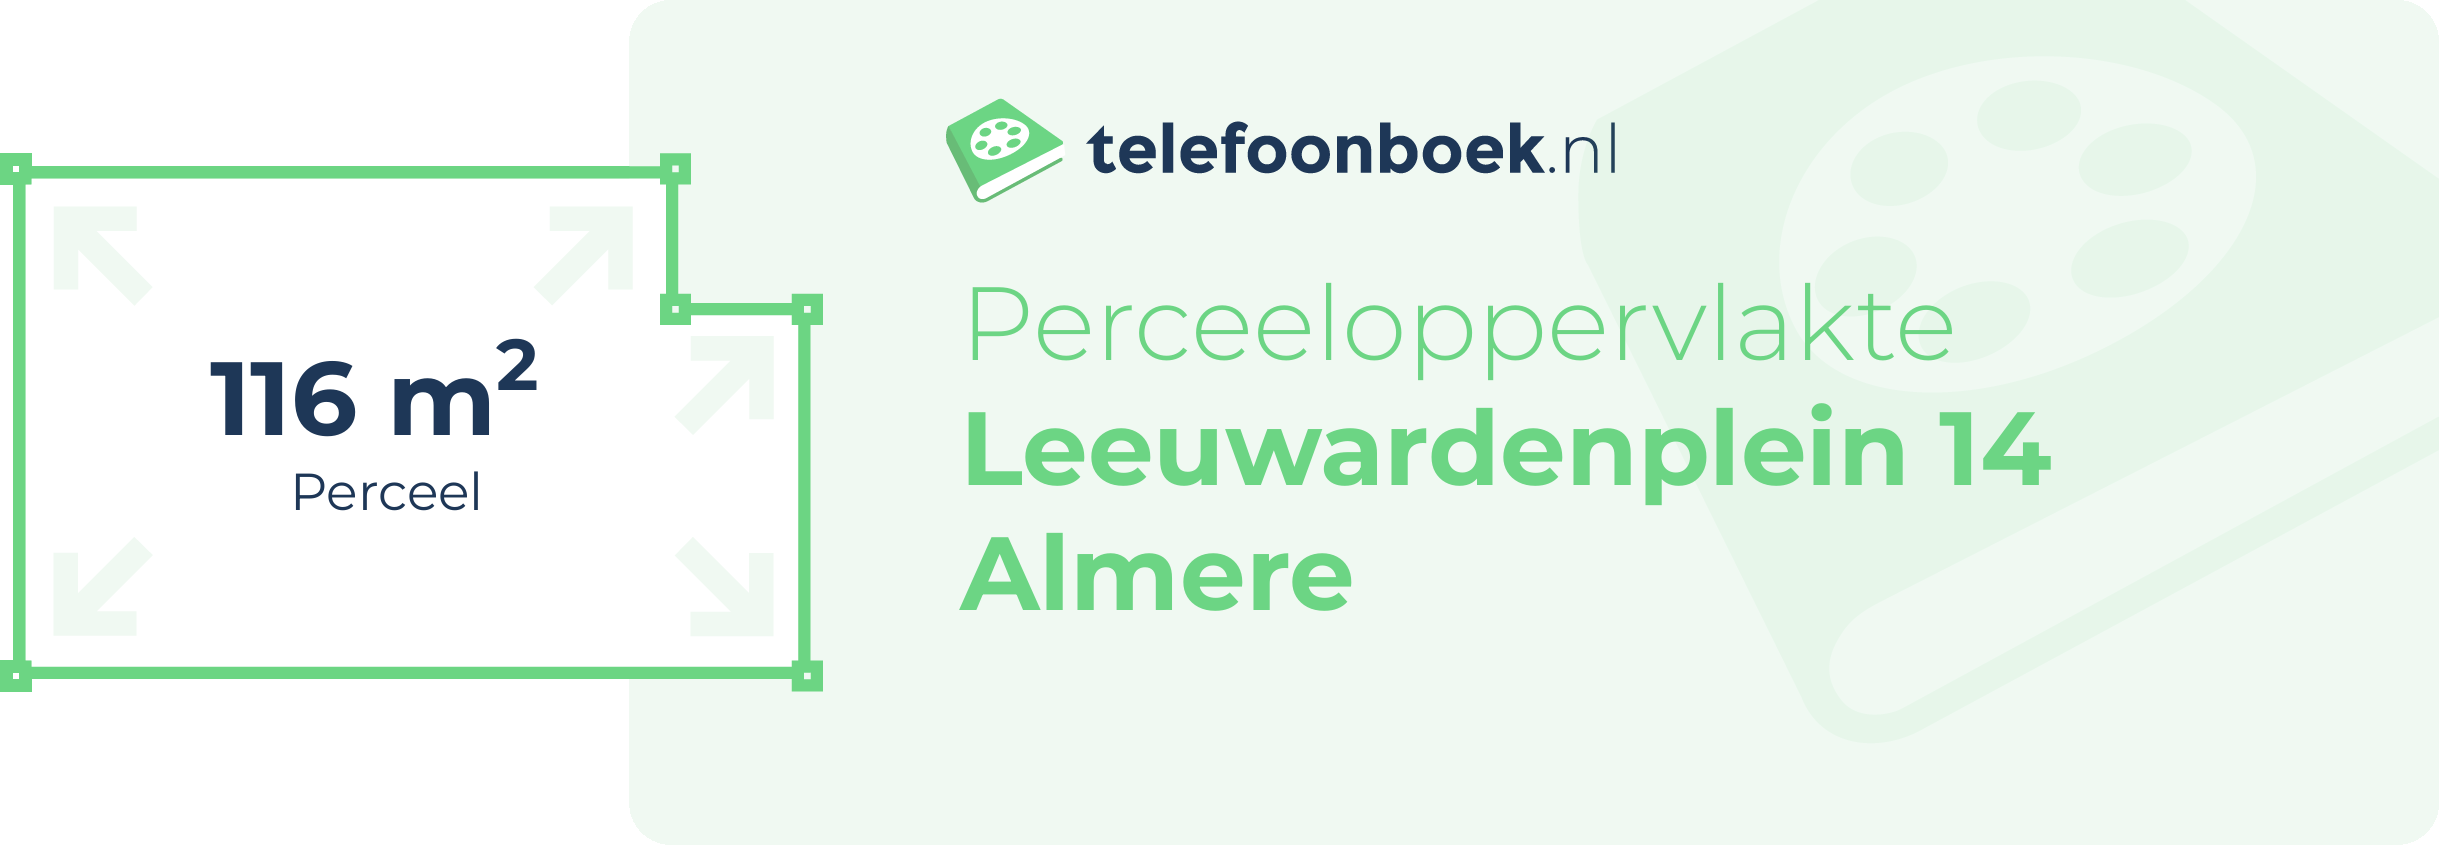 Perceeloppervlakte Leeuwardenplein 14 Almere